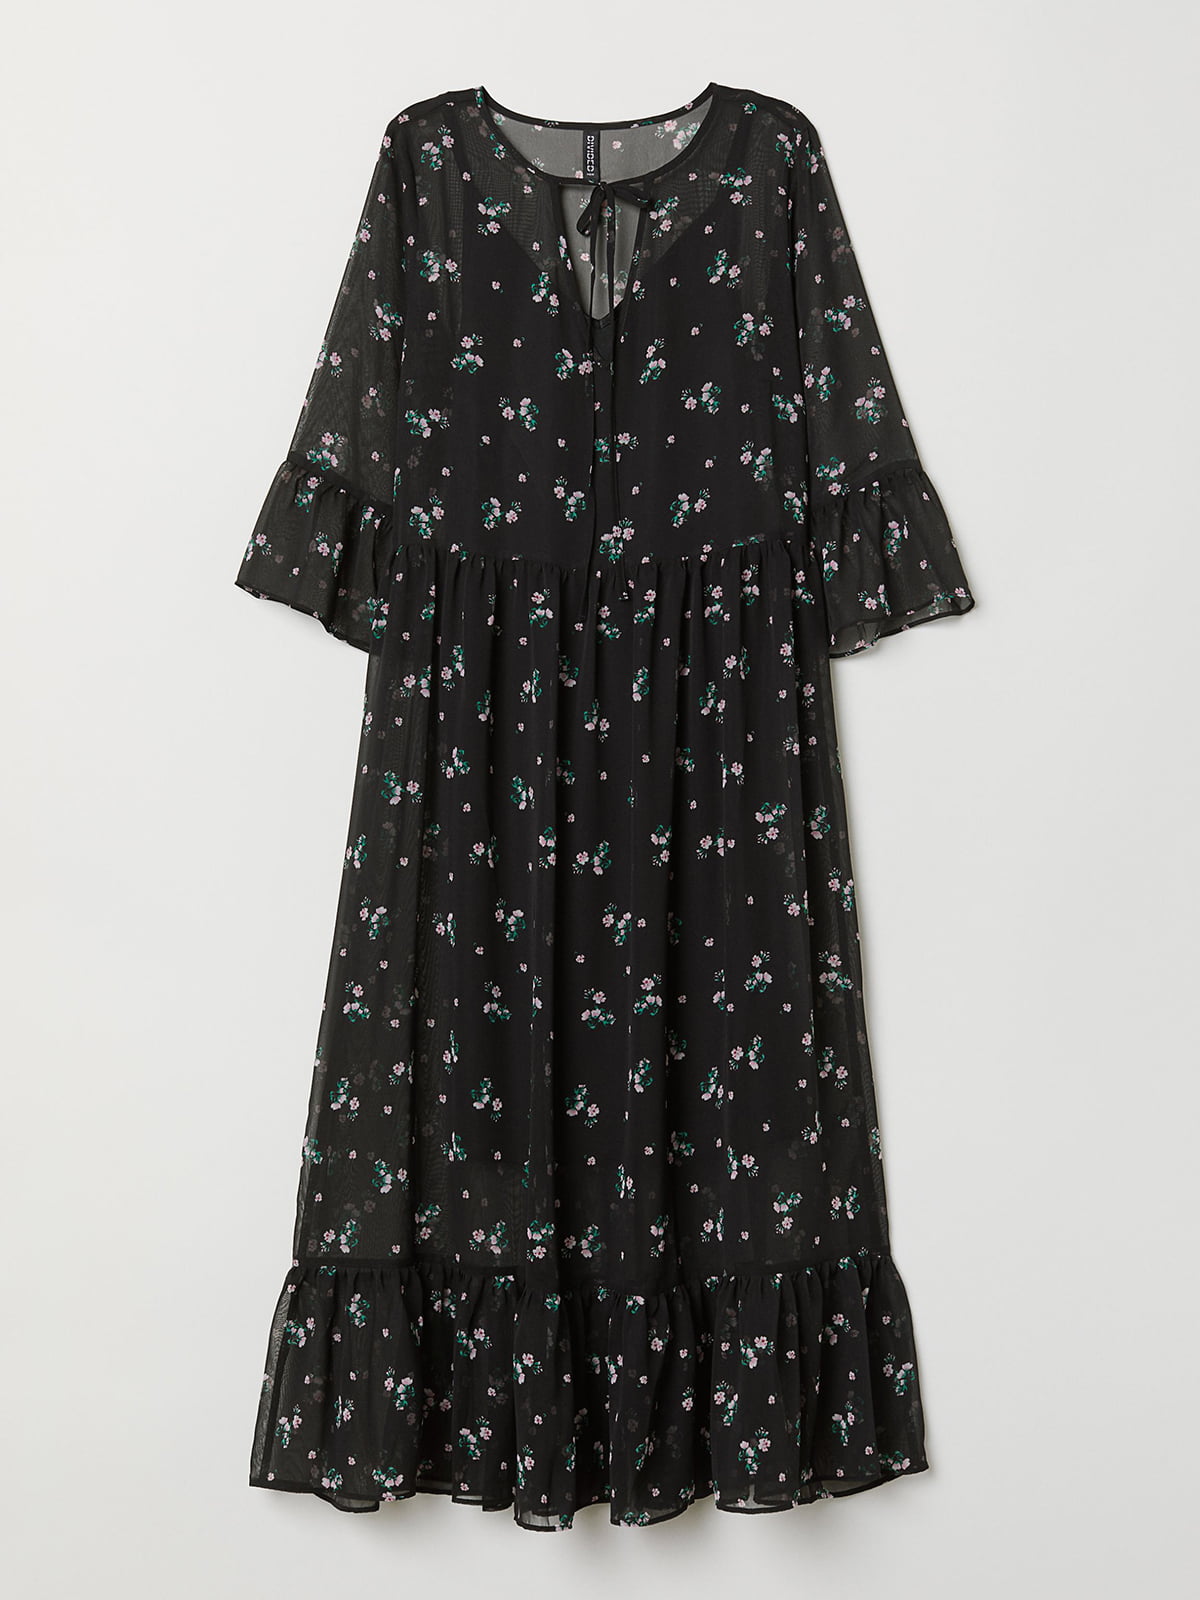 Платье черное с цветочным принтом | 5477684